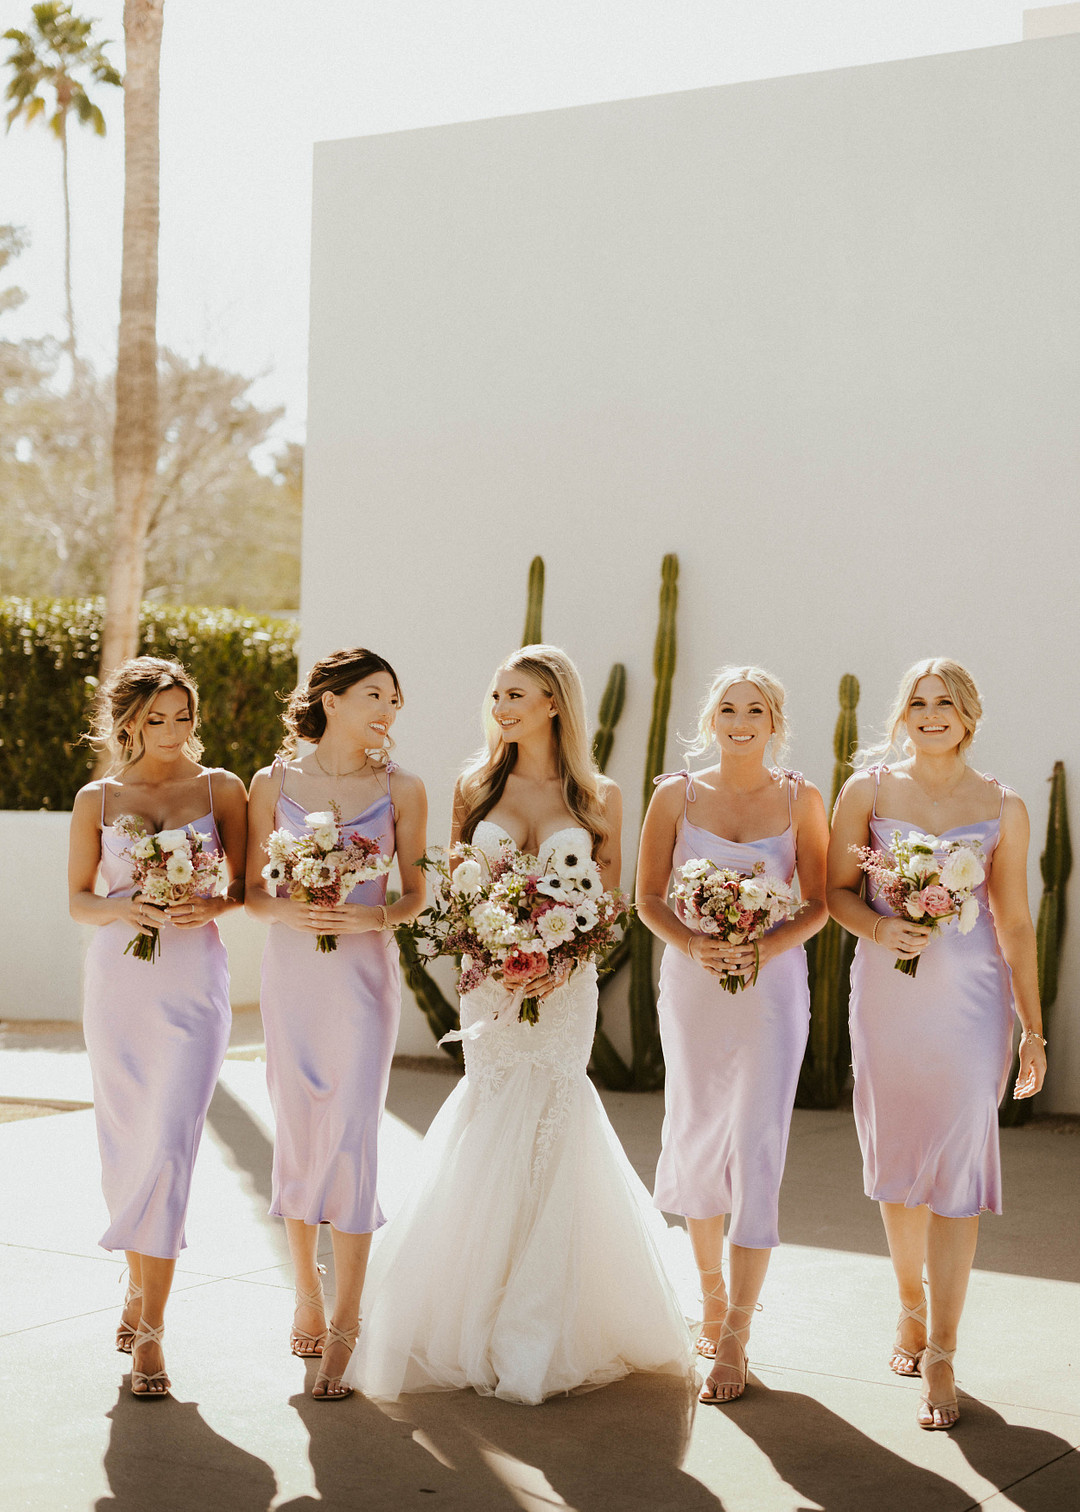 Brautjungfernkleider in Violett liegen voll im Trend